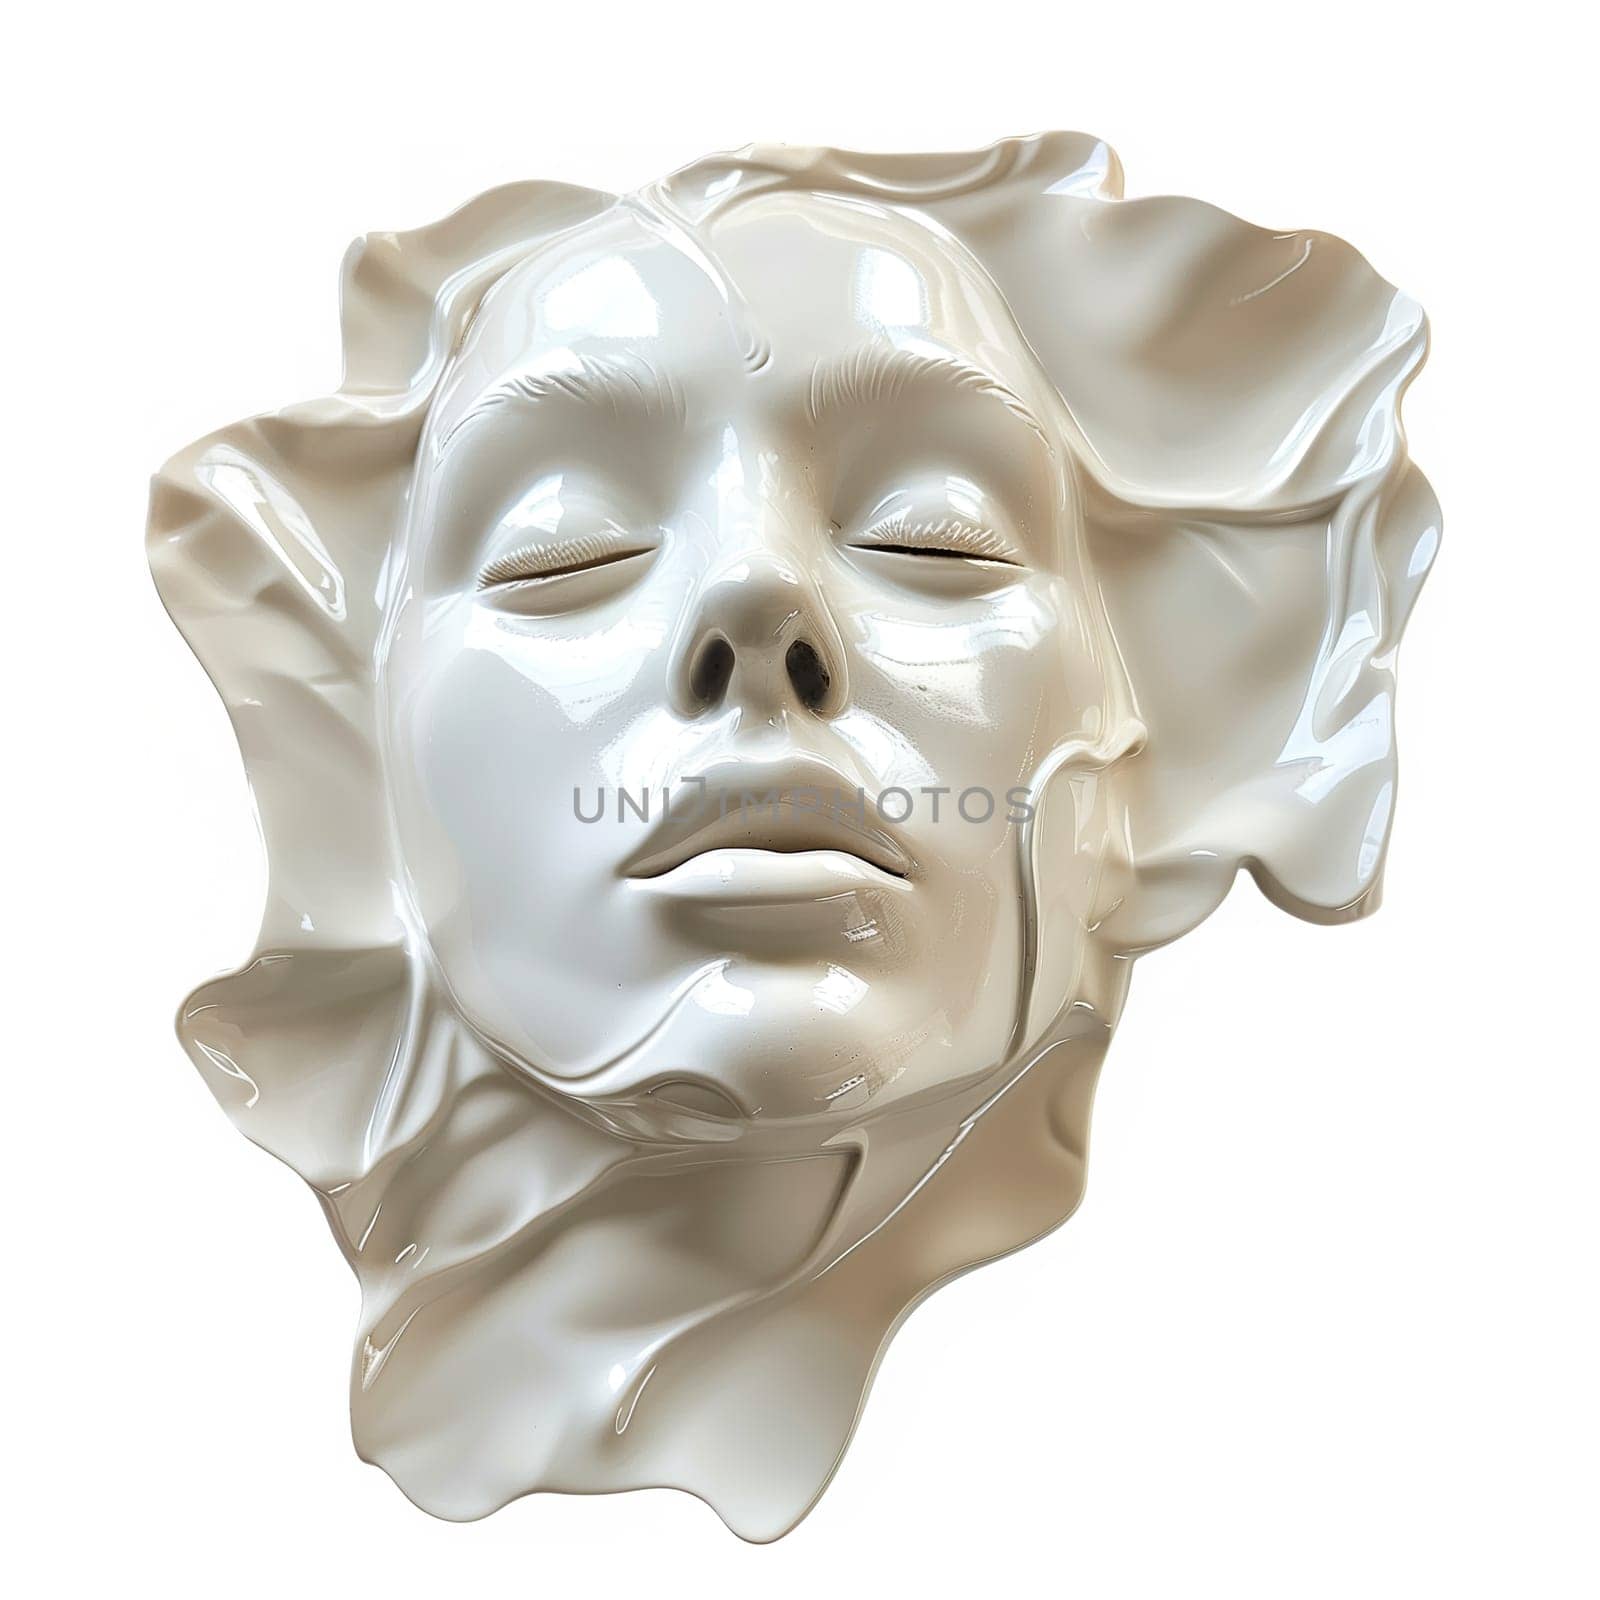 Woman portrait ceramic statue cut out element by Dustick